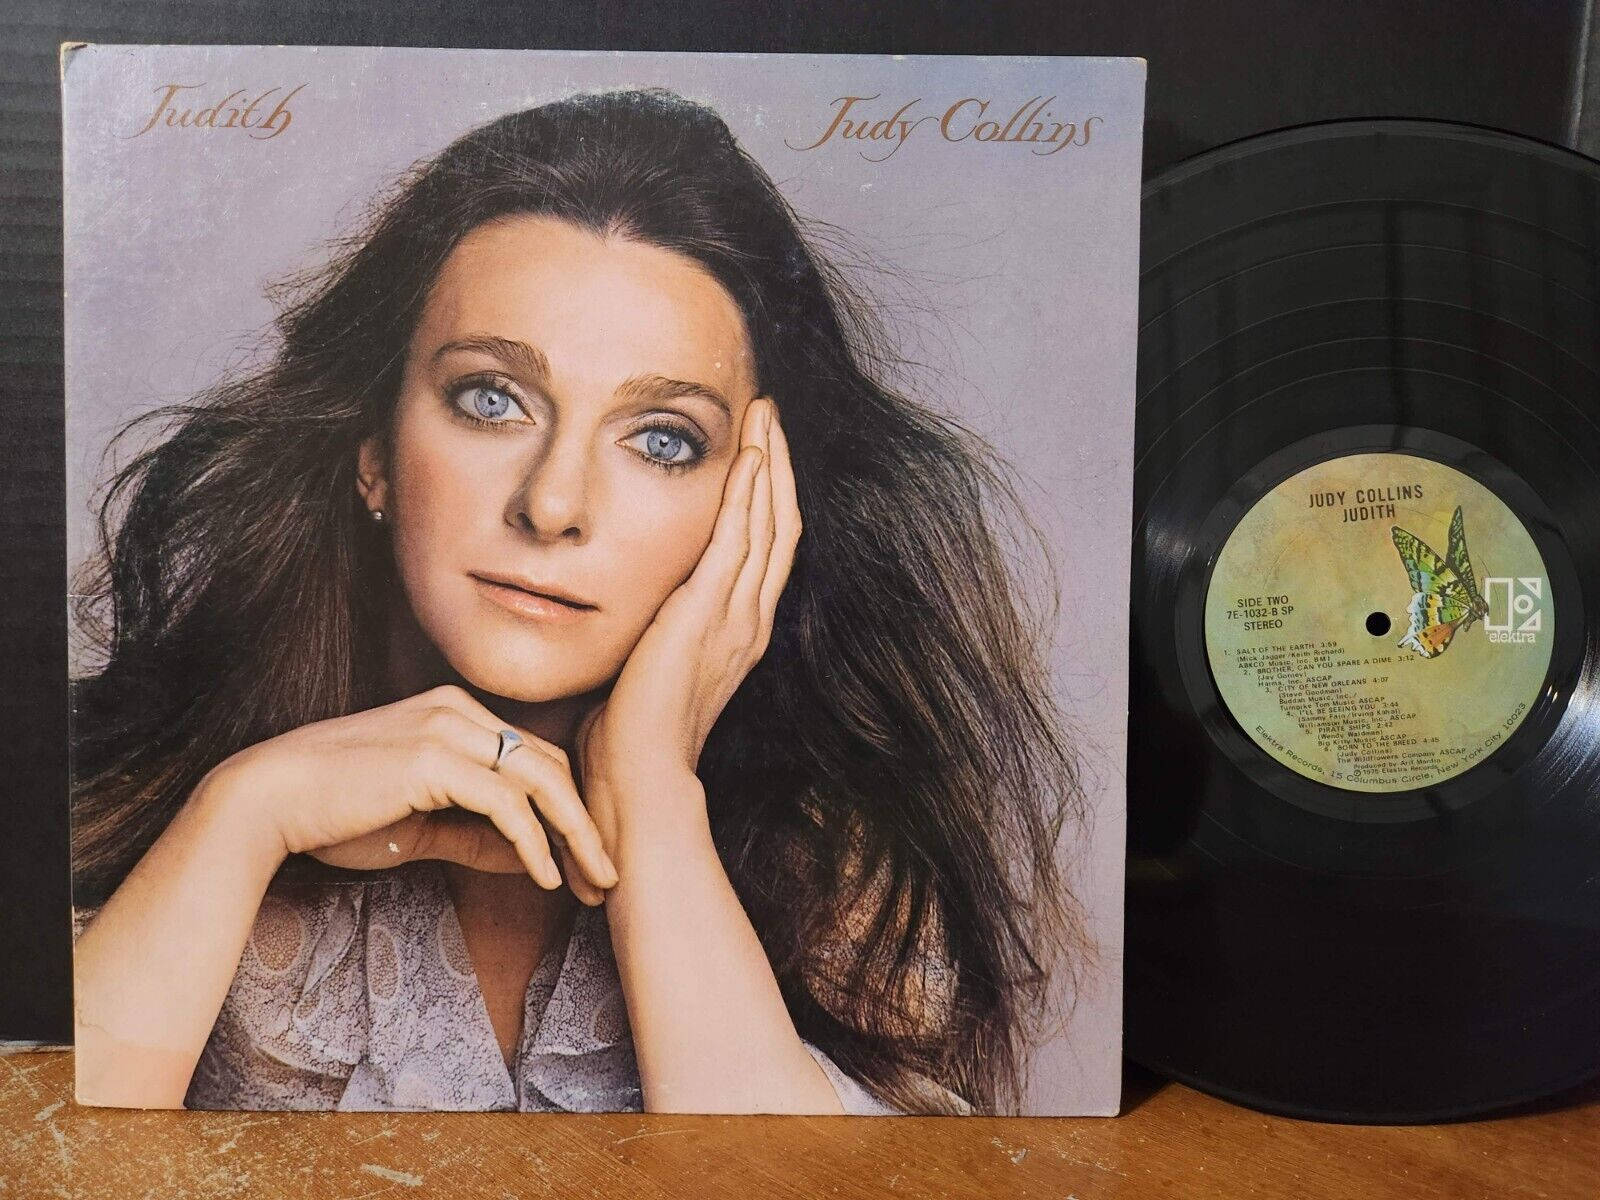 Amerikanischesängerin Judy Collins' Album 